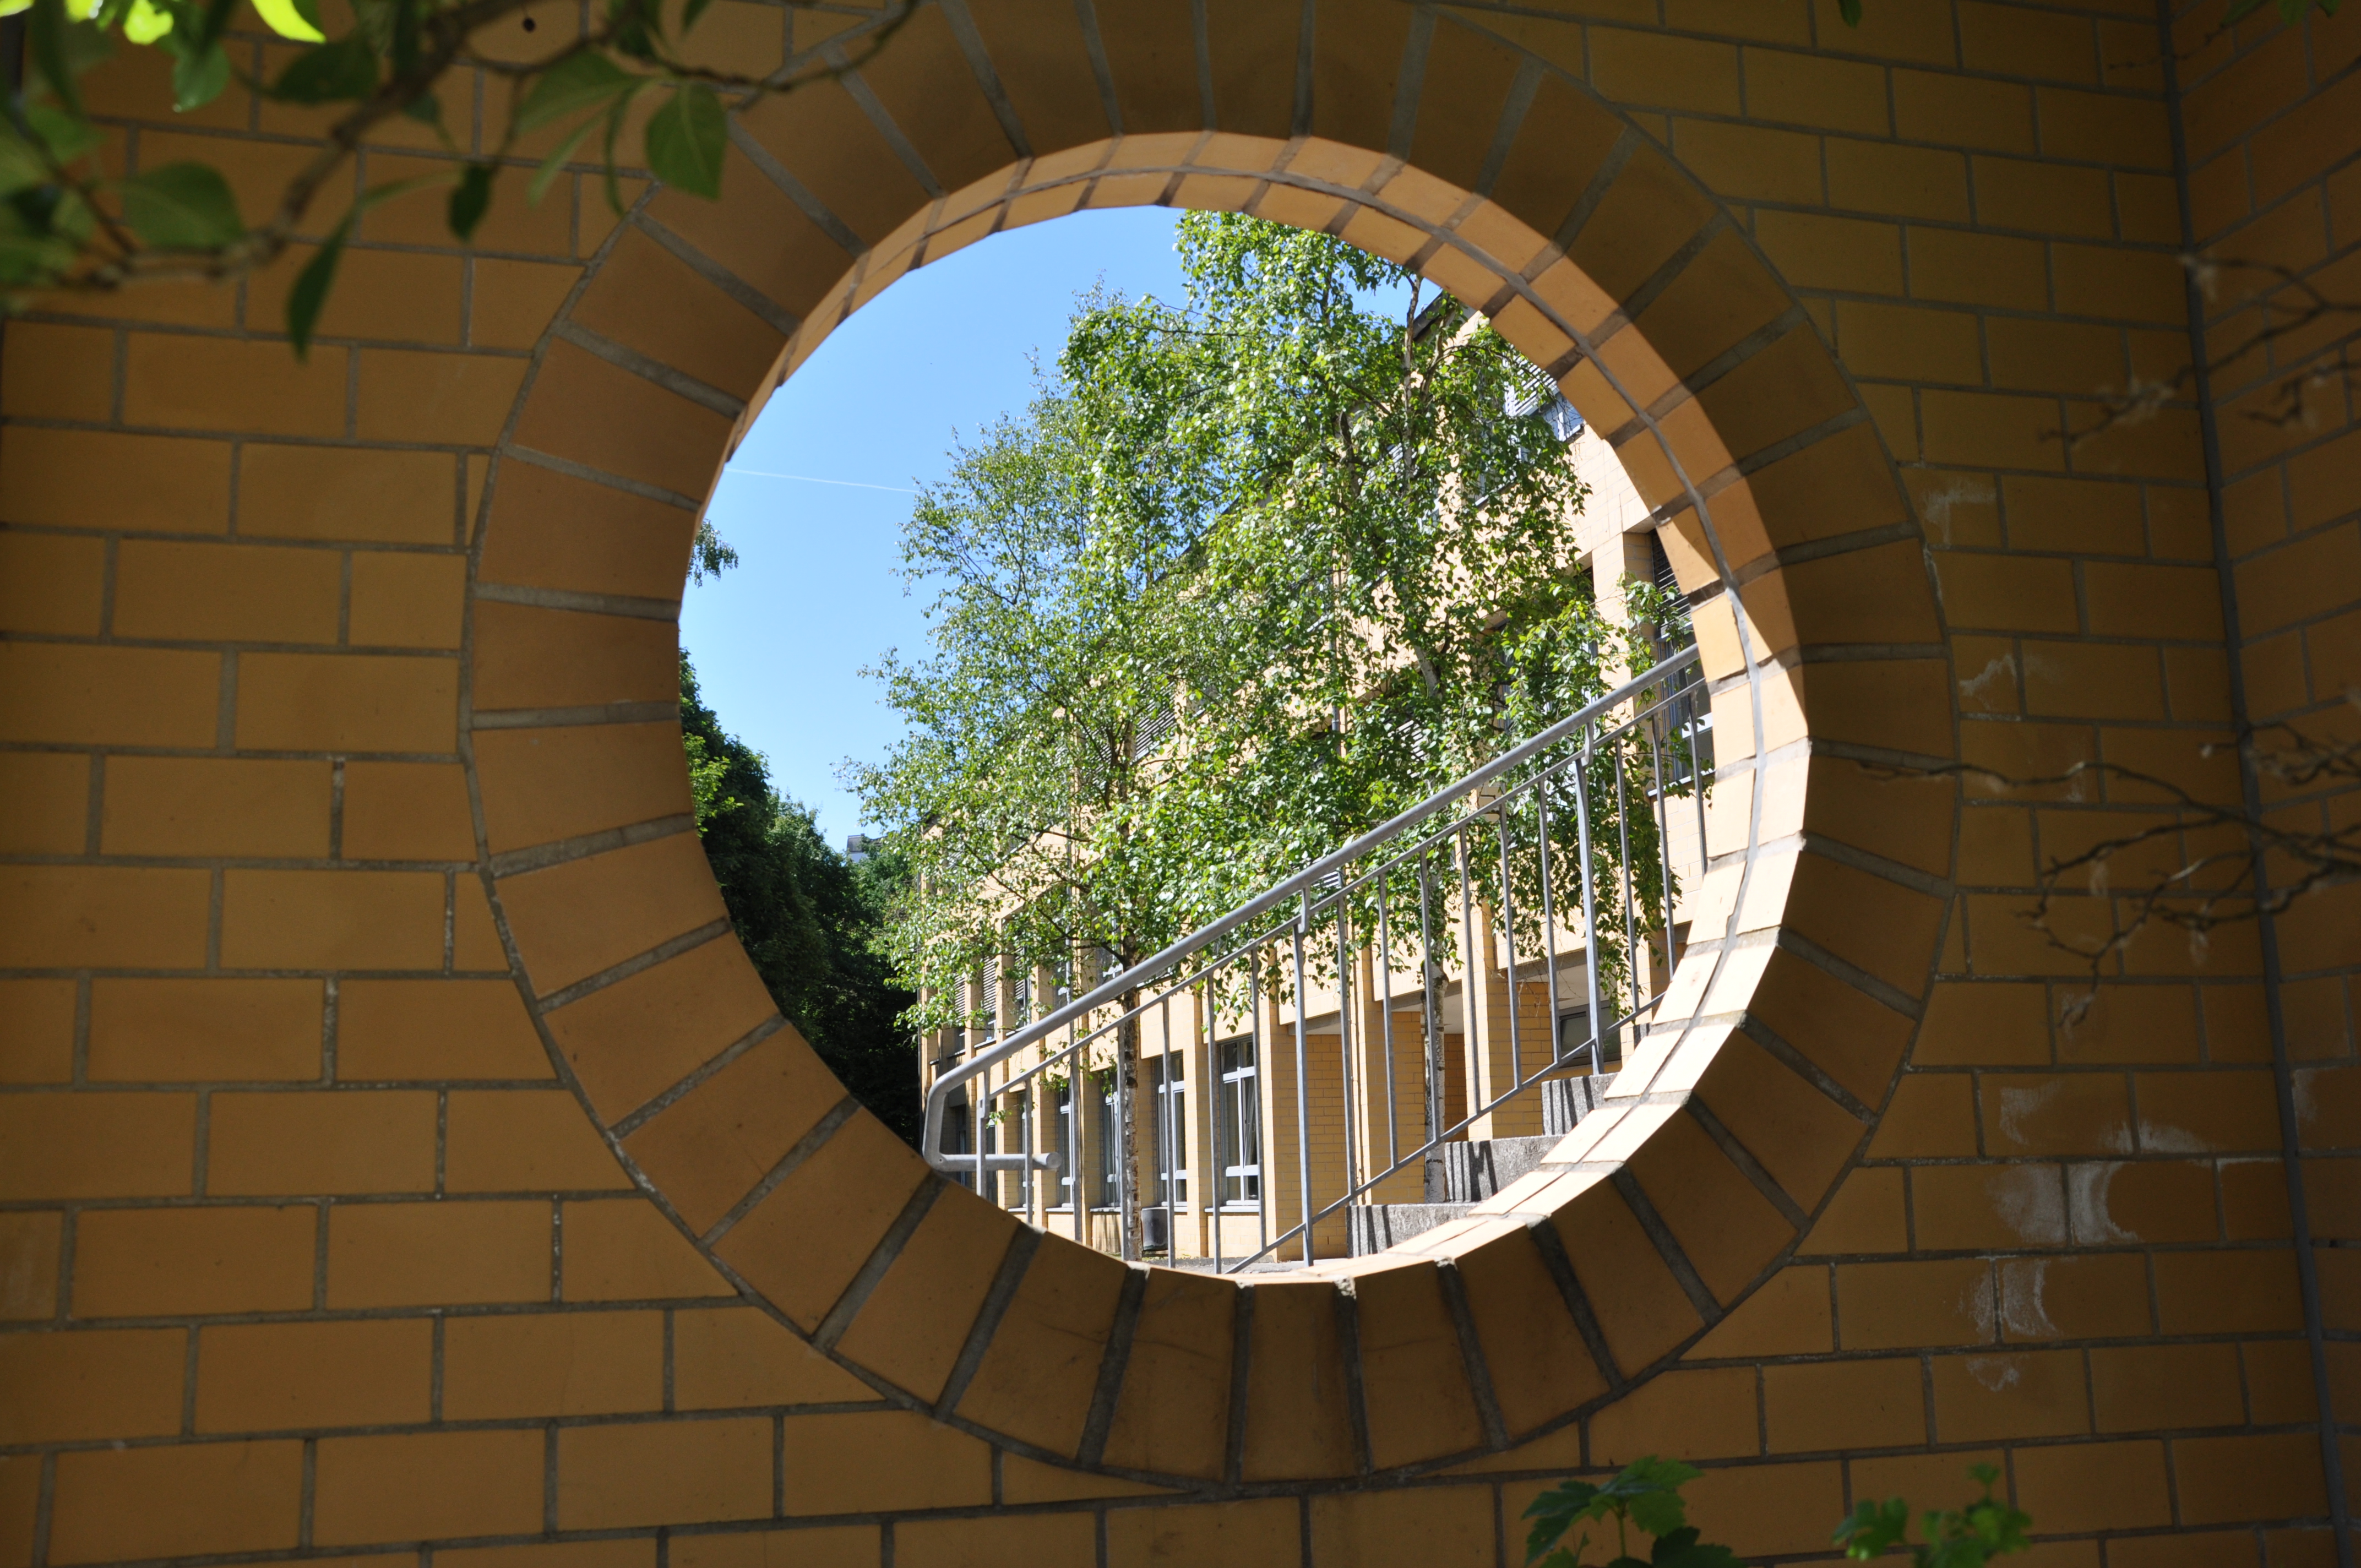 Blick auf das Schulgebäude Berufskolleg Eschweiler durch eine rund gemauerte Öffnung in der Wand